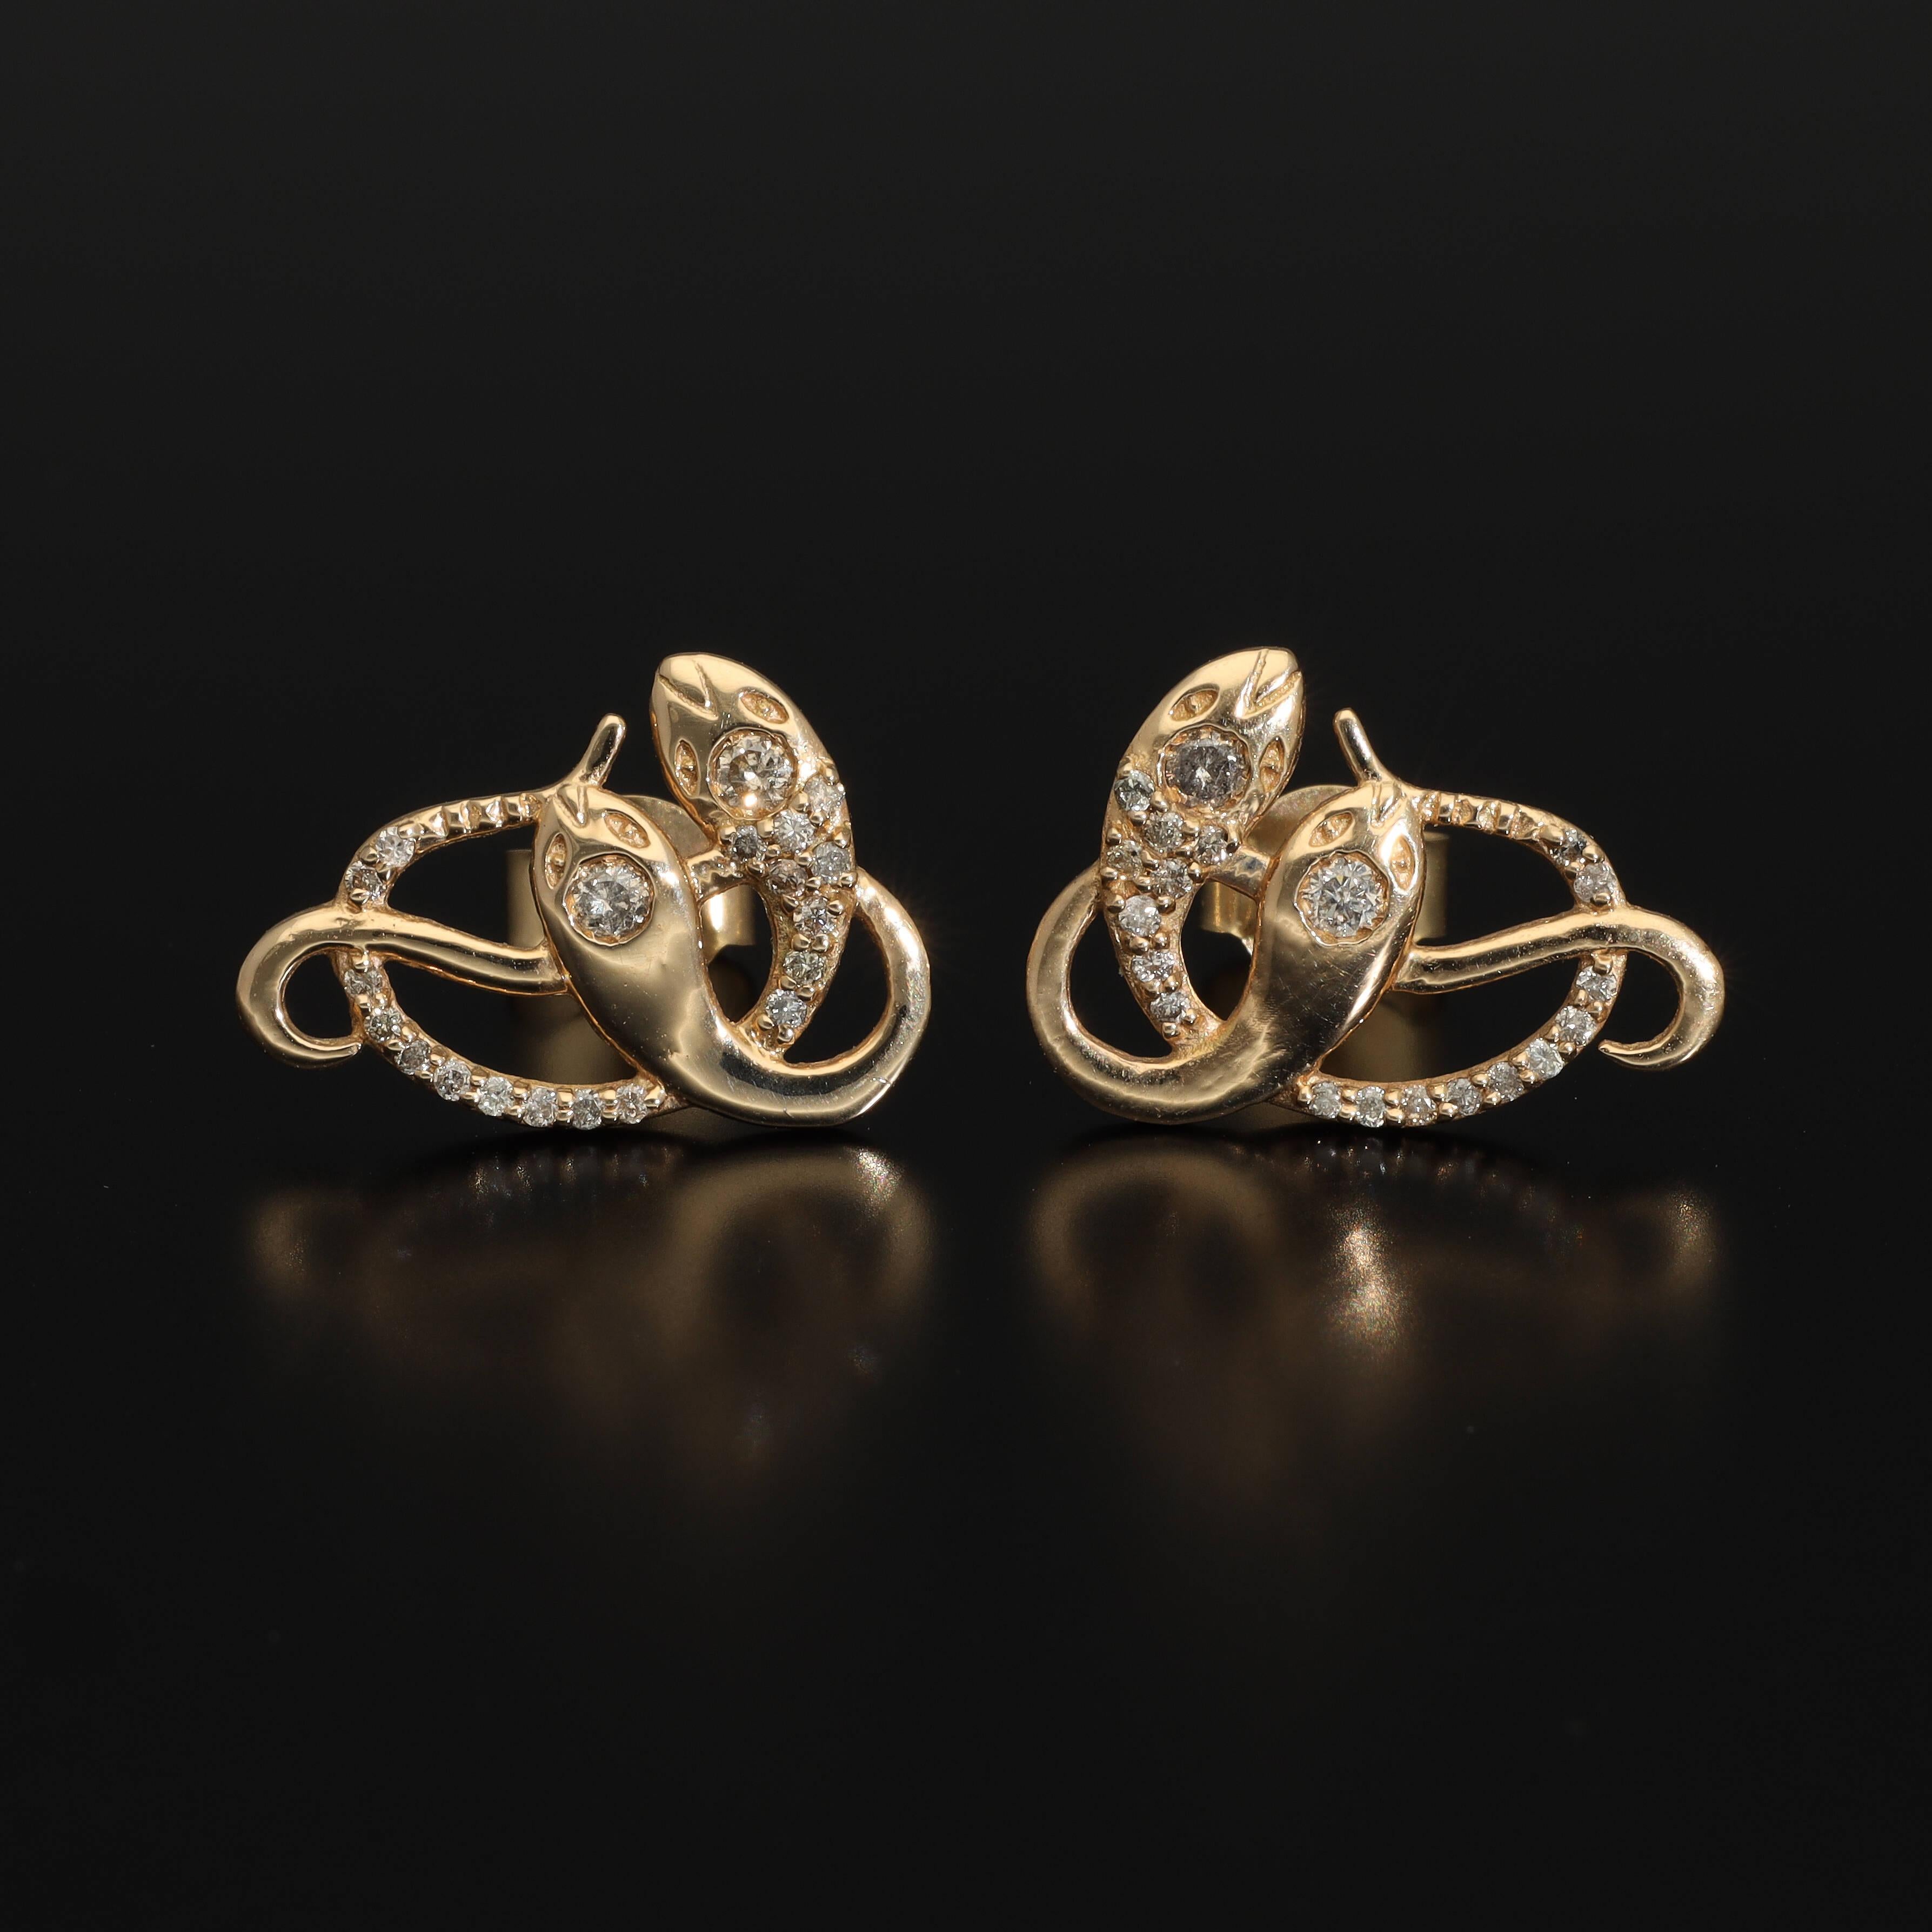 Women's or Men's Antique Diamond Snake Earrings Solid 14k Gold, Victorian Revival Gold Snake Stud For Sale